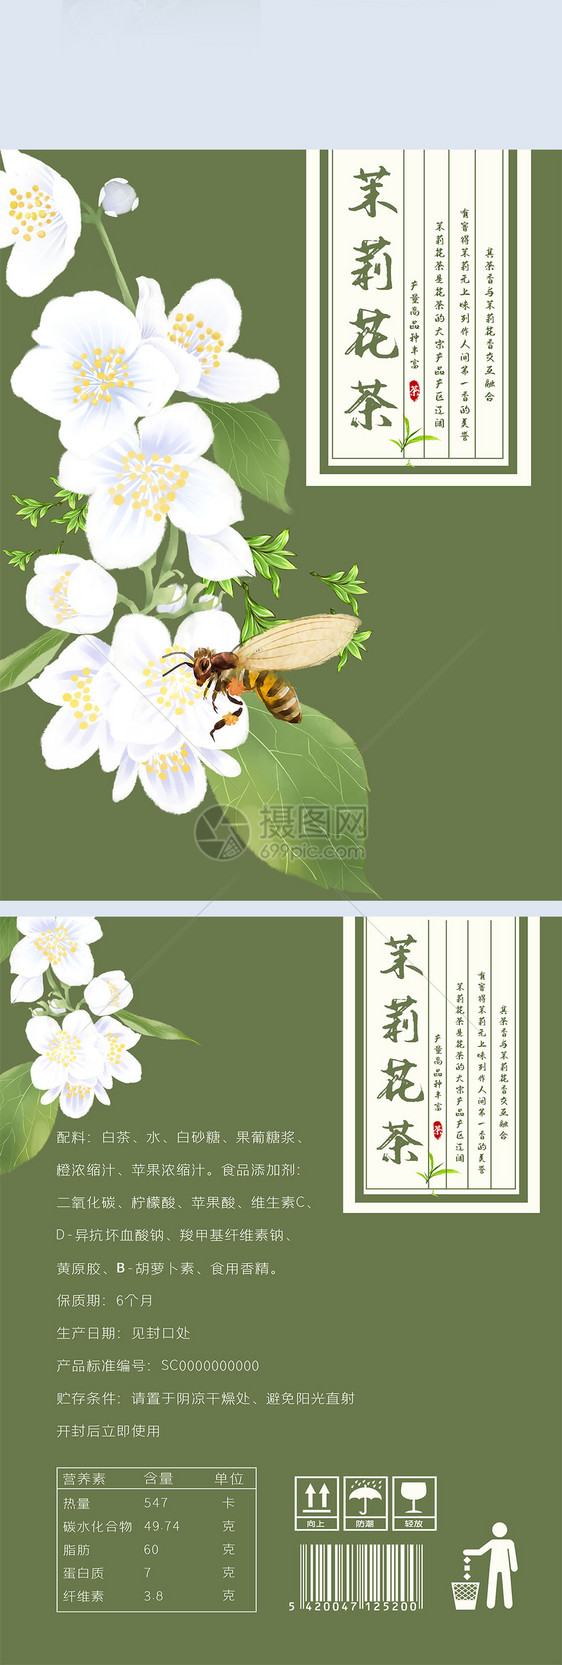 茉莉花茶传统包装设计图片